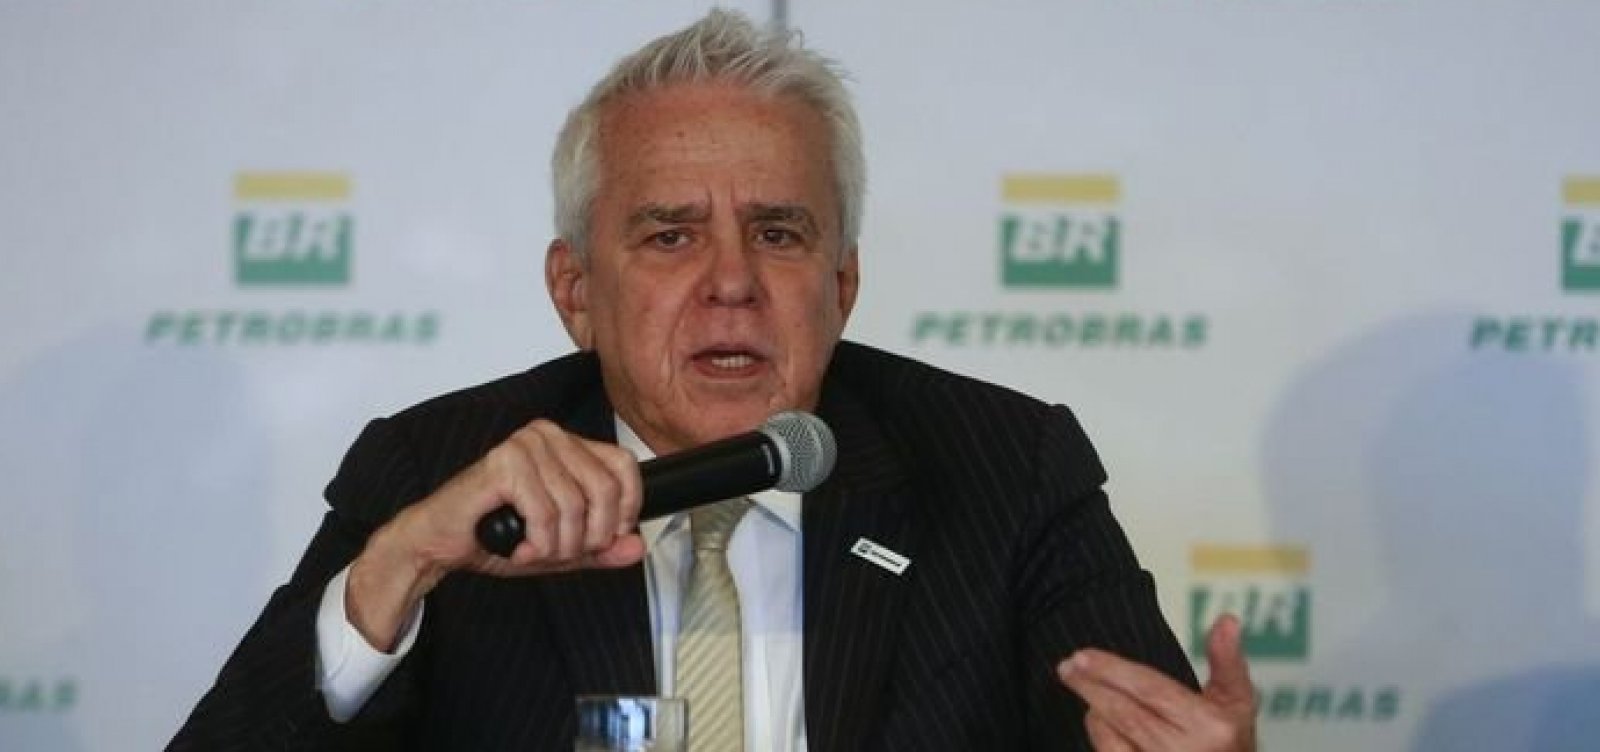 Oposição pede ao STF apreensão de celular da Petrobras que pode incriminar Bolsonaro